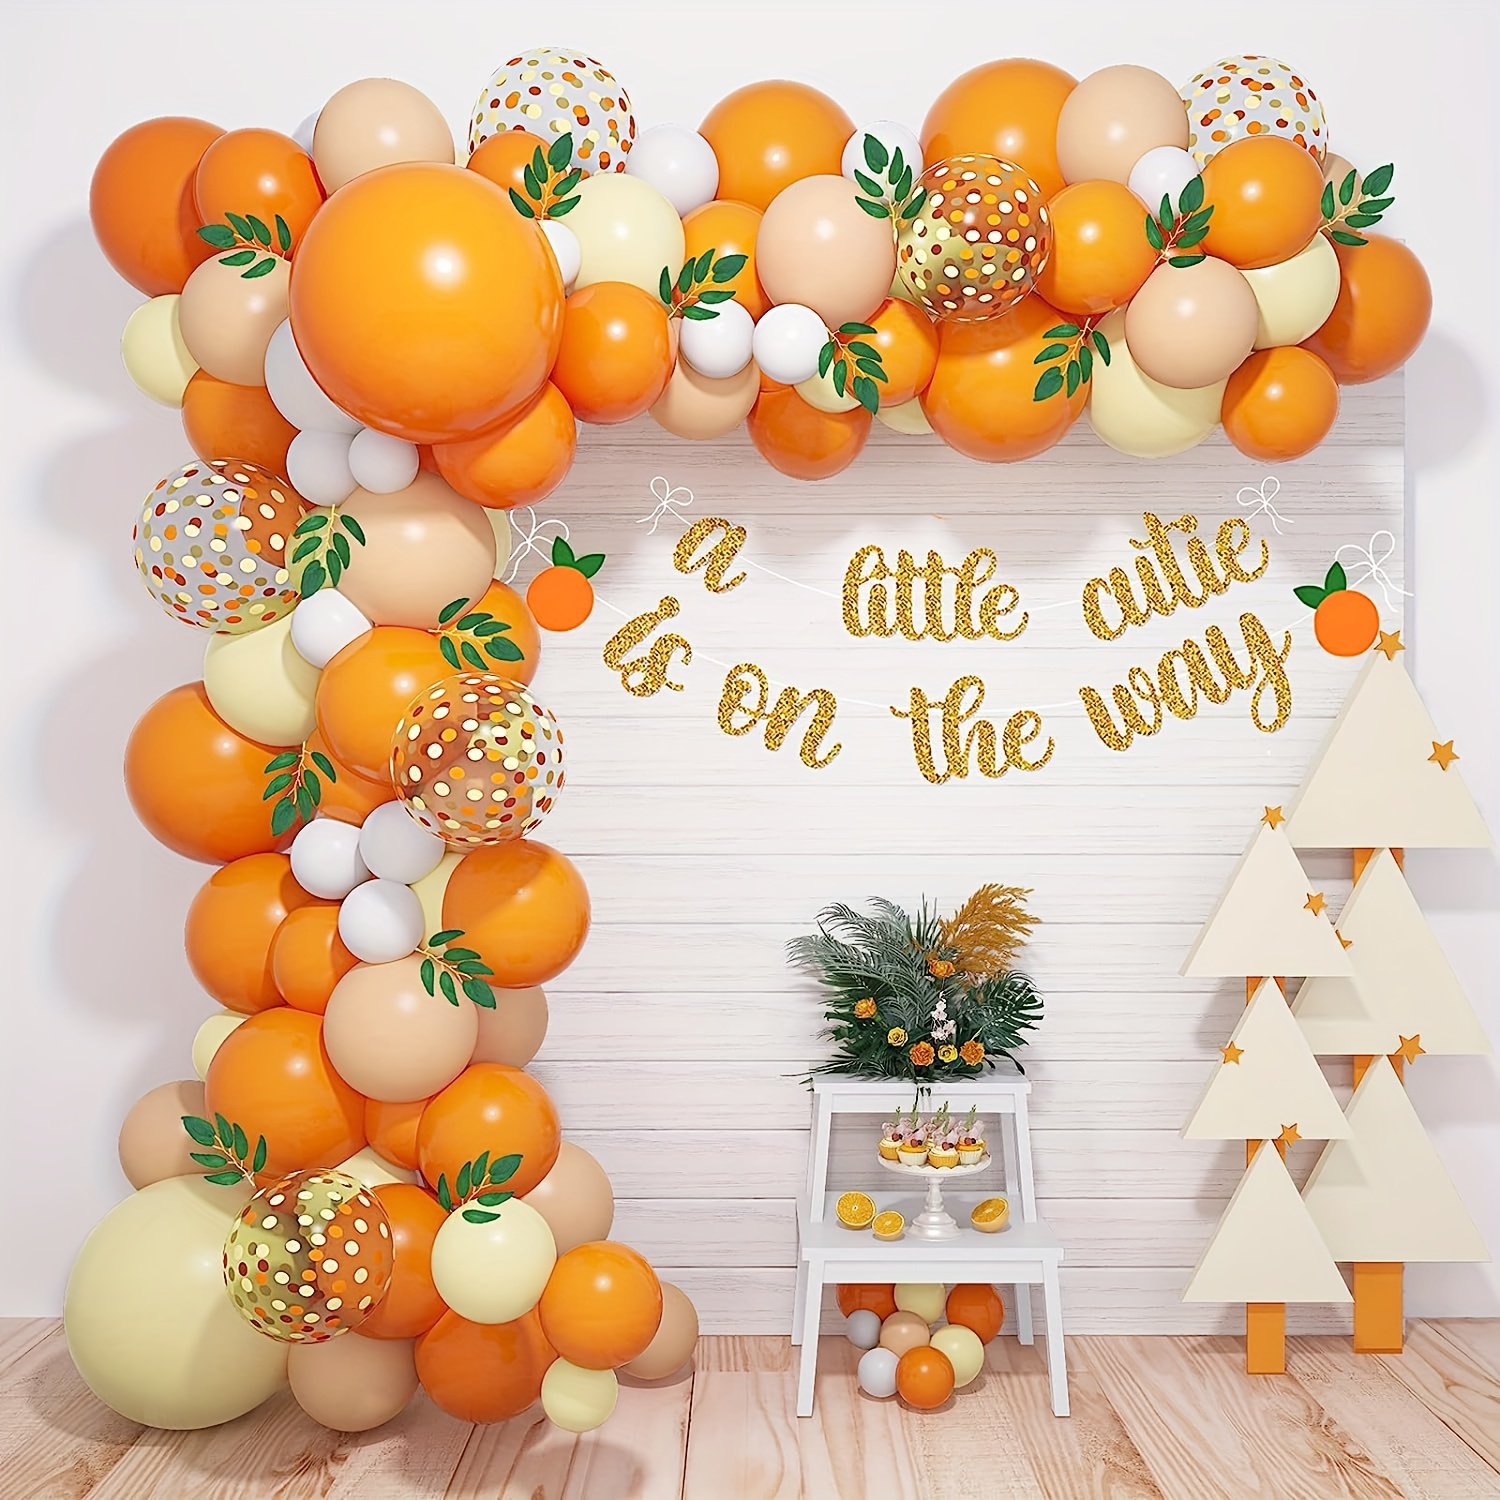 Decoraciones de cumpleaños con globos: 123 piezas de guirnalda de globos  naranja, amarillo y azul para guirnaldas de globos, perfecto para baby